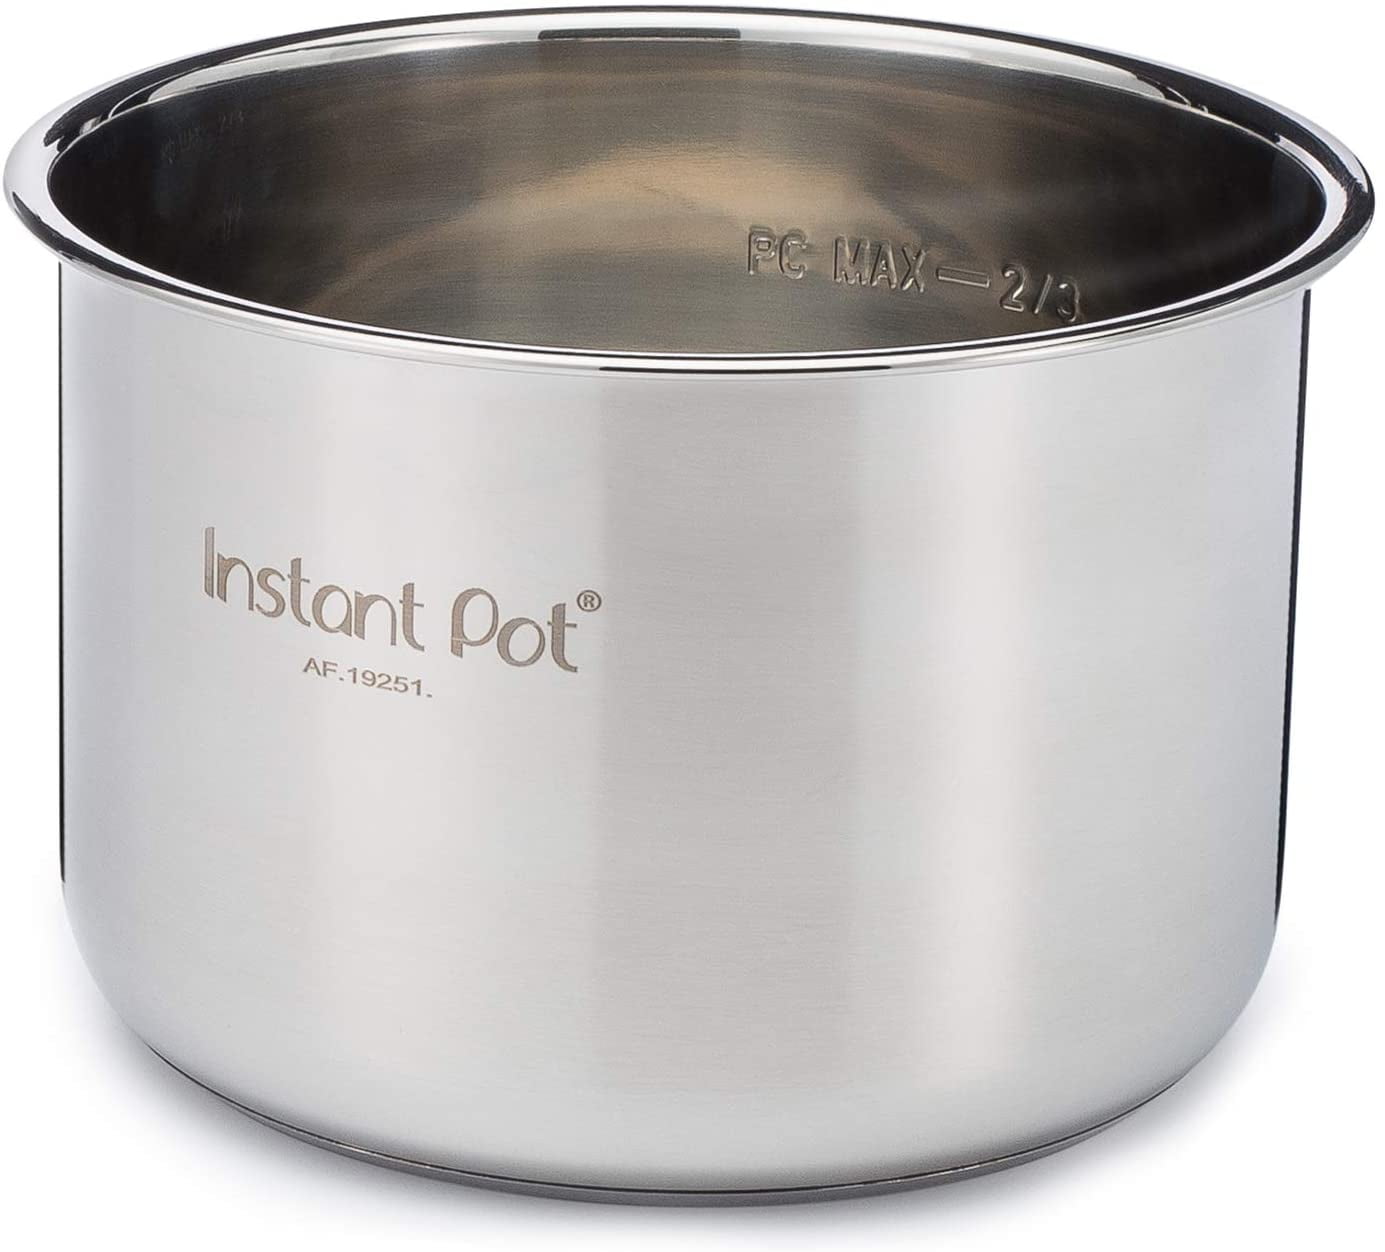 Instant Pot 80 EPC 8-Quart Stainless Steel Inner Pot